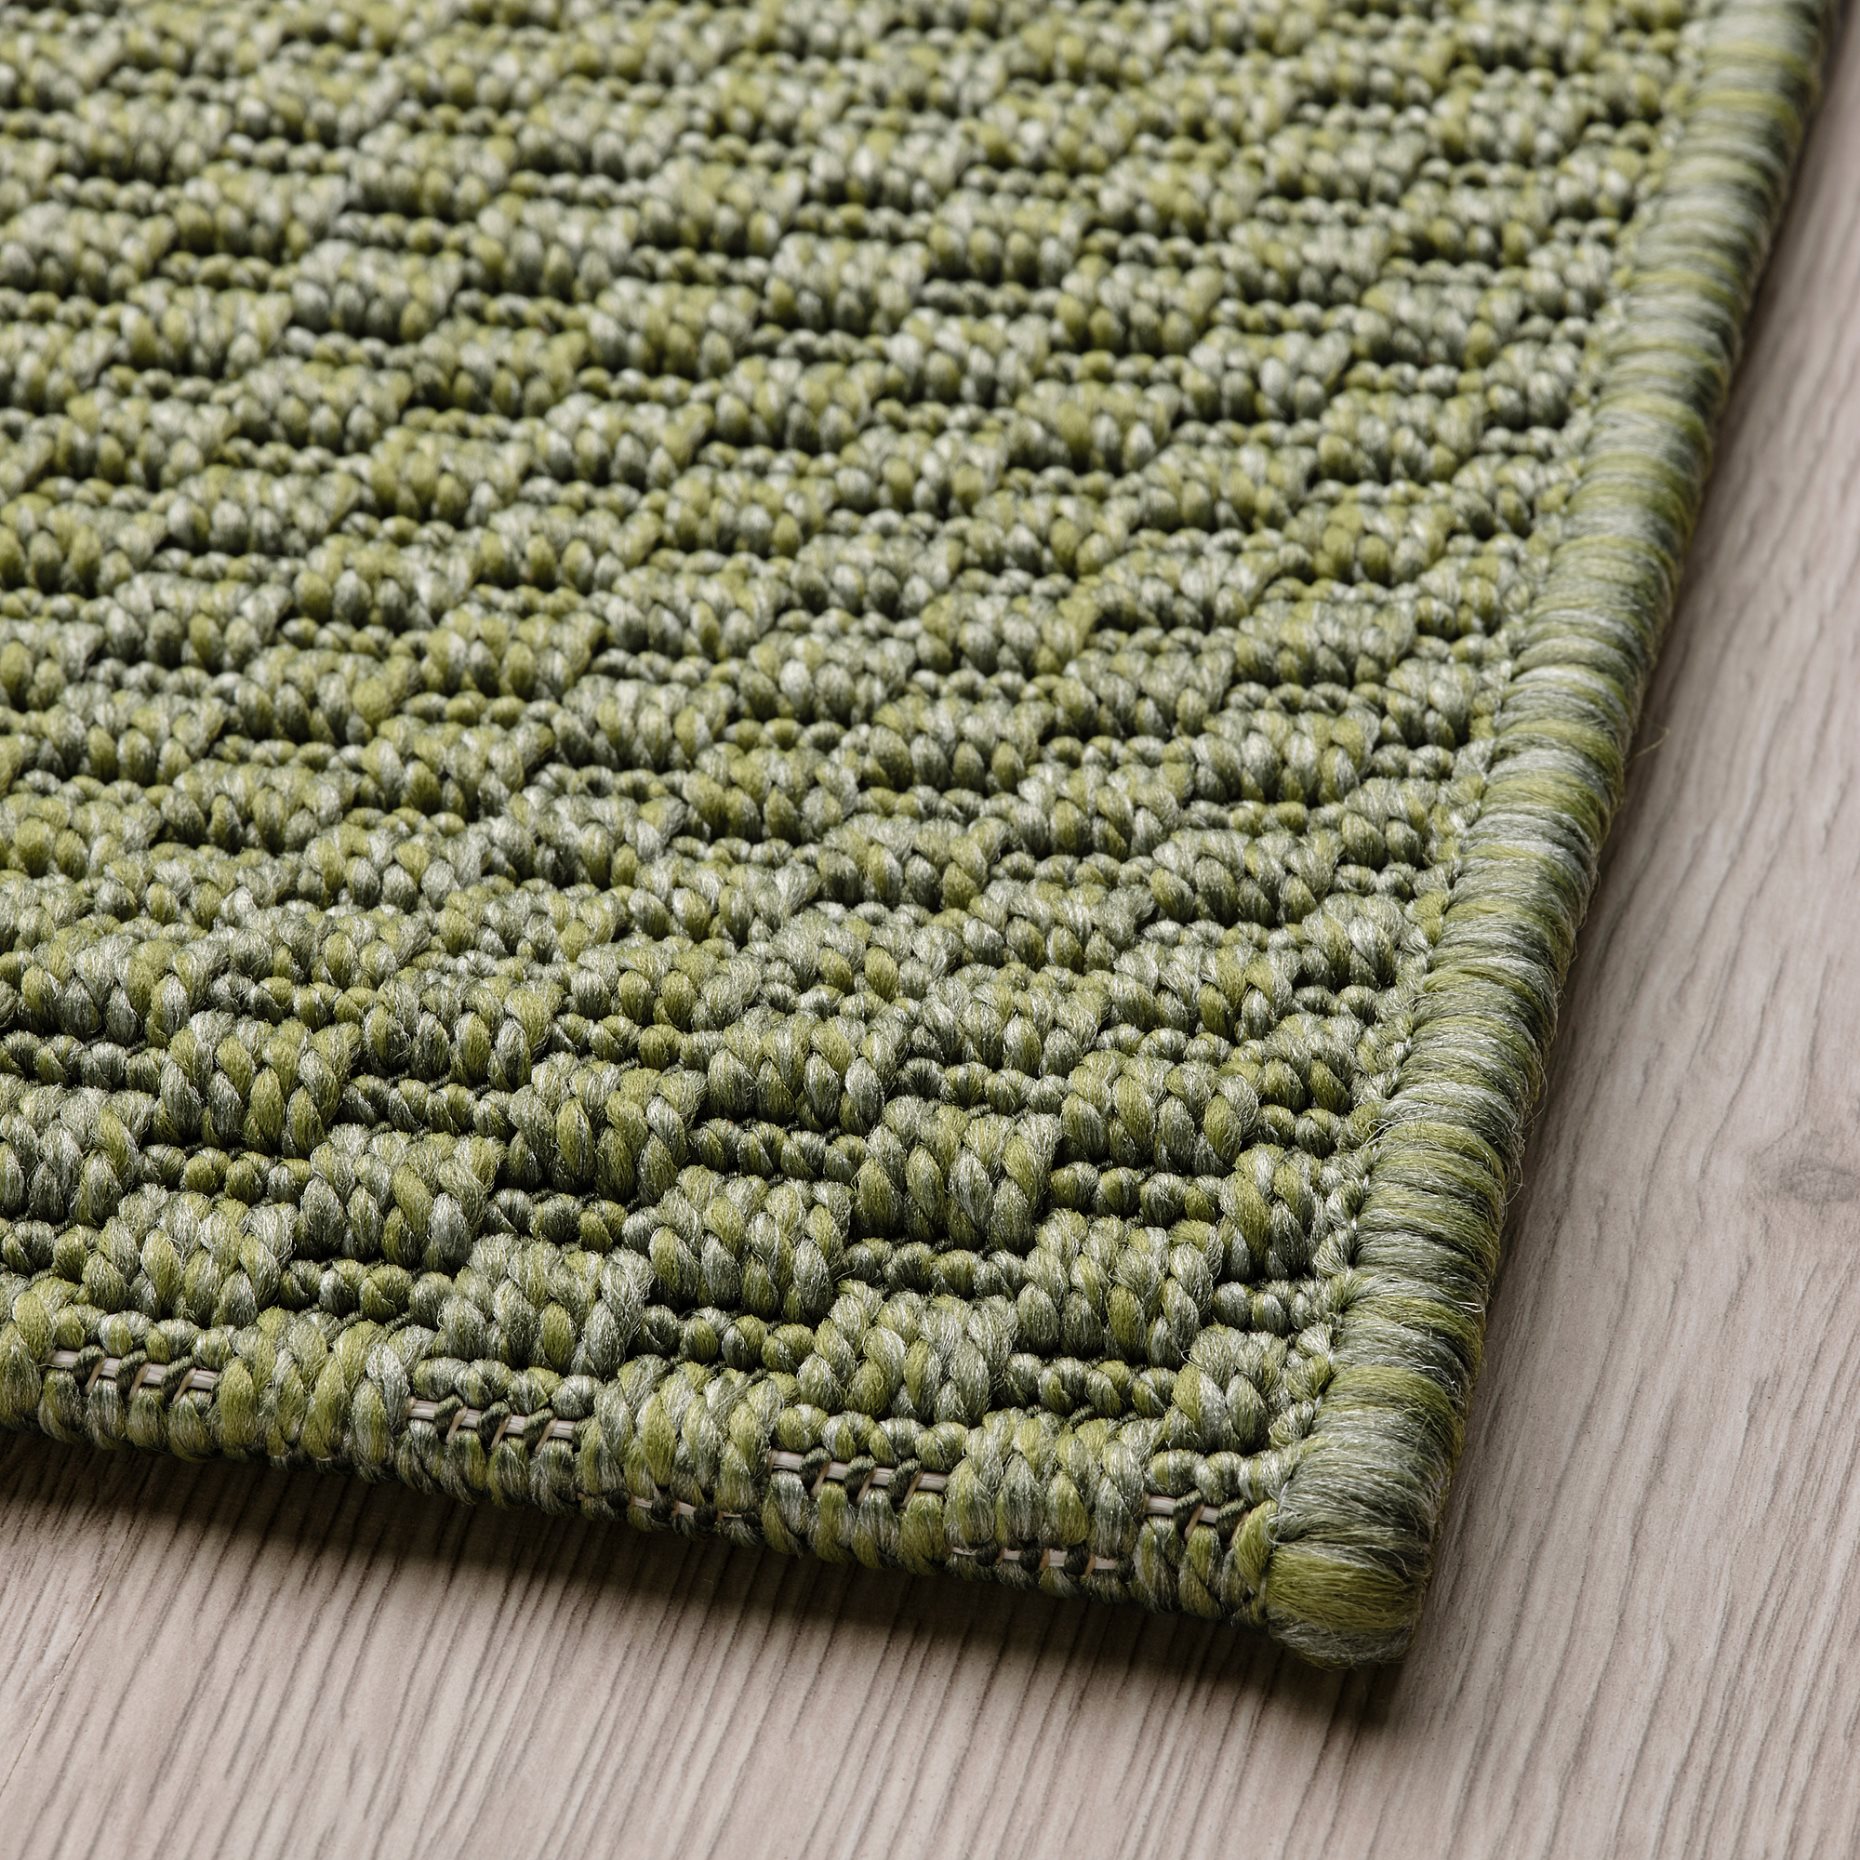 MORUM, rug flatwoven/in/outdoor, 200x300 cm, 105.691.43